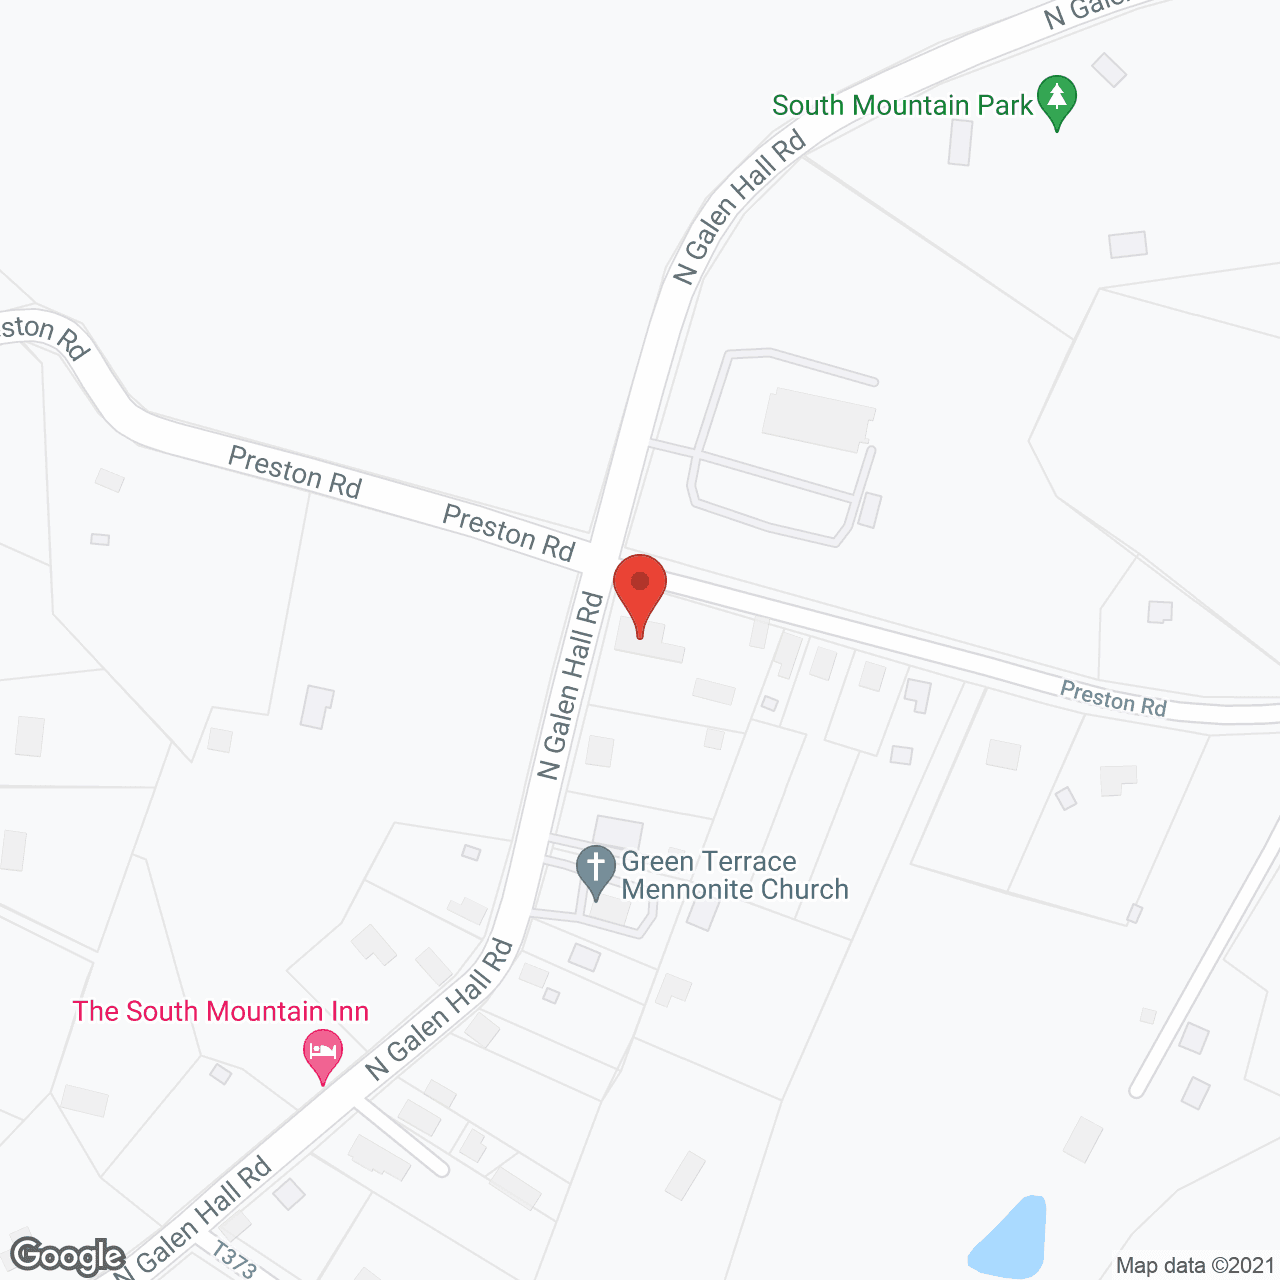 Danken House in google map